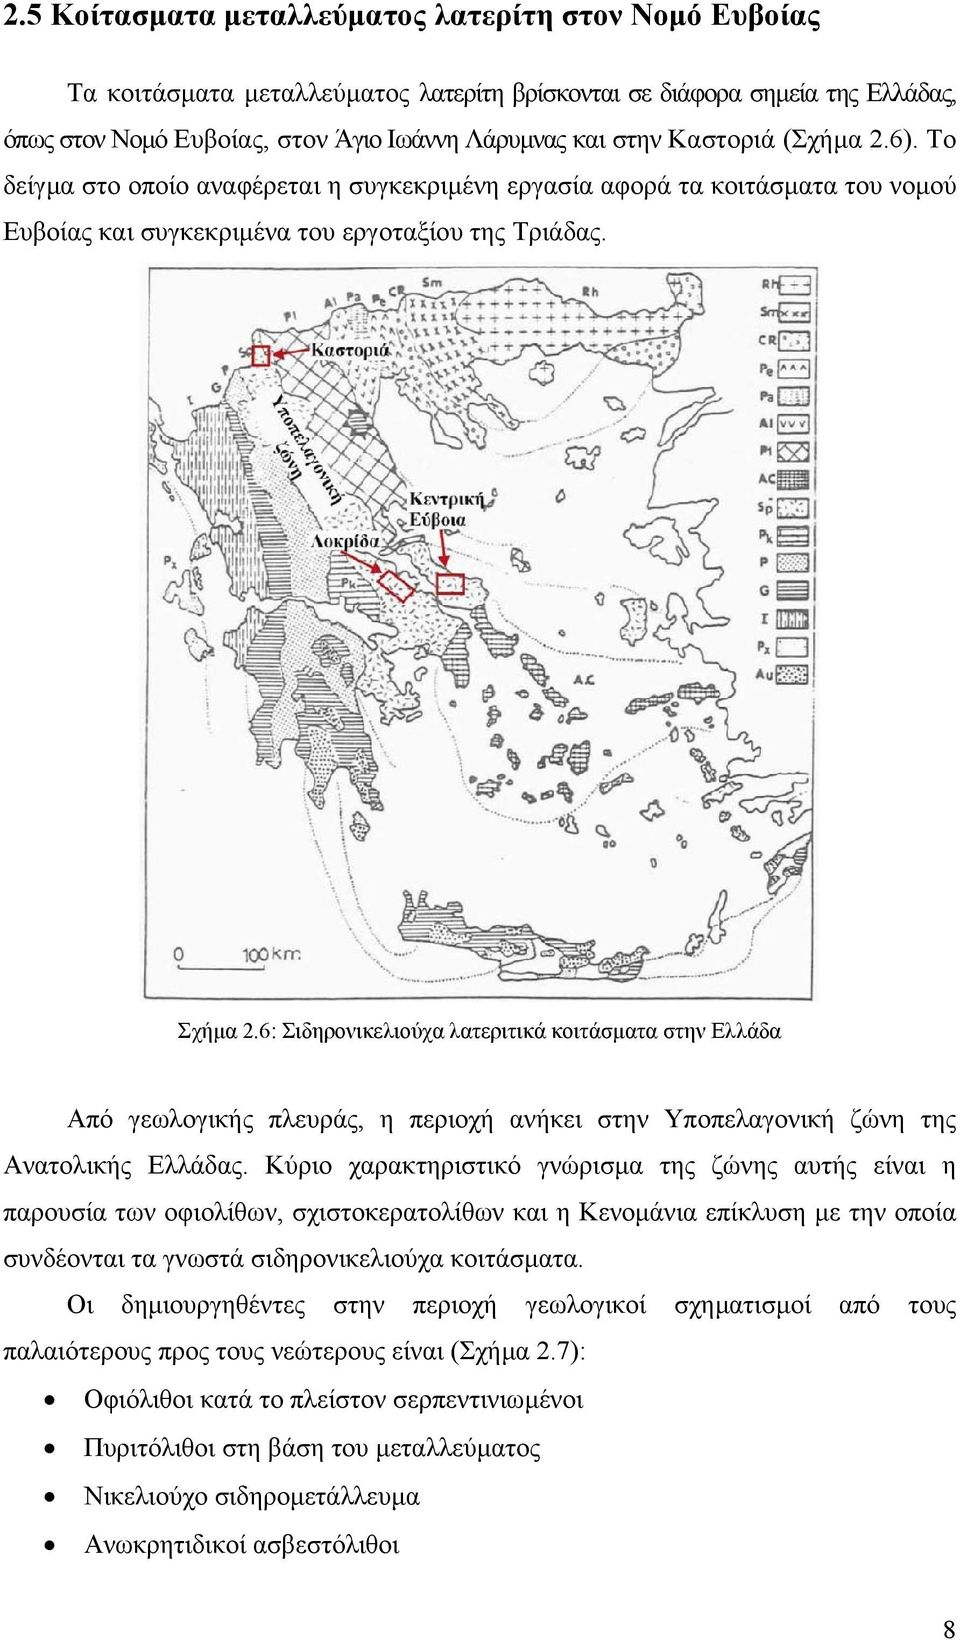 6: Σιδηρονικελιούχα λατεριτικά κοιτάσµατα στην Ελλάδα Από γεωλογικής πλευράς, η περιοχή ανήκει στην Υποπελαγονική ζώνη της Ανατολικής Ελλάδας.